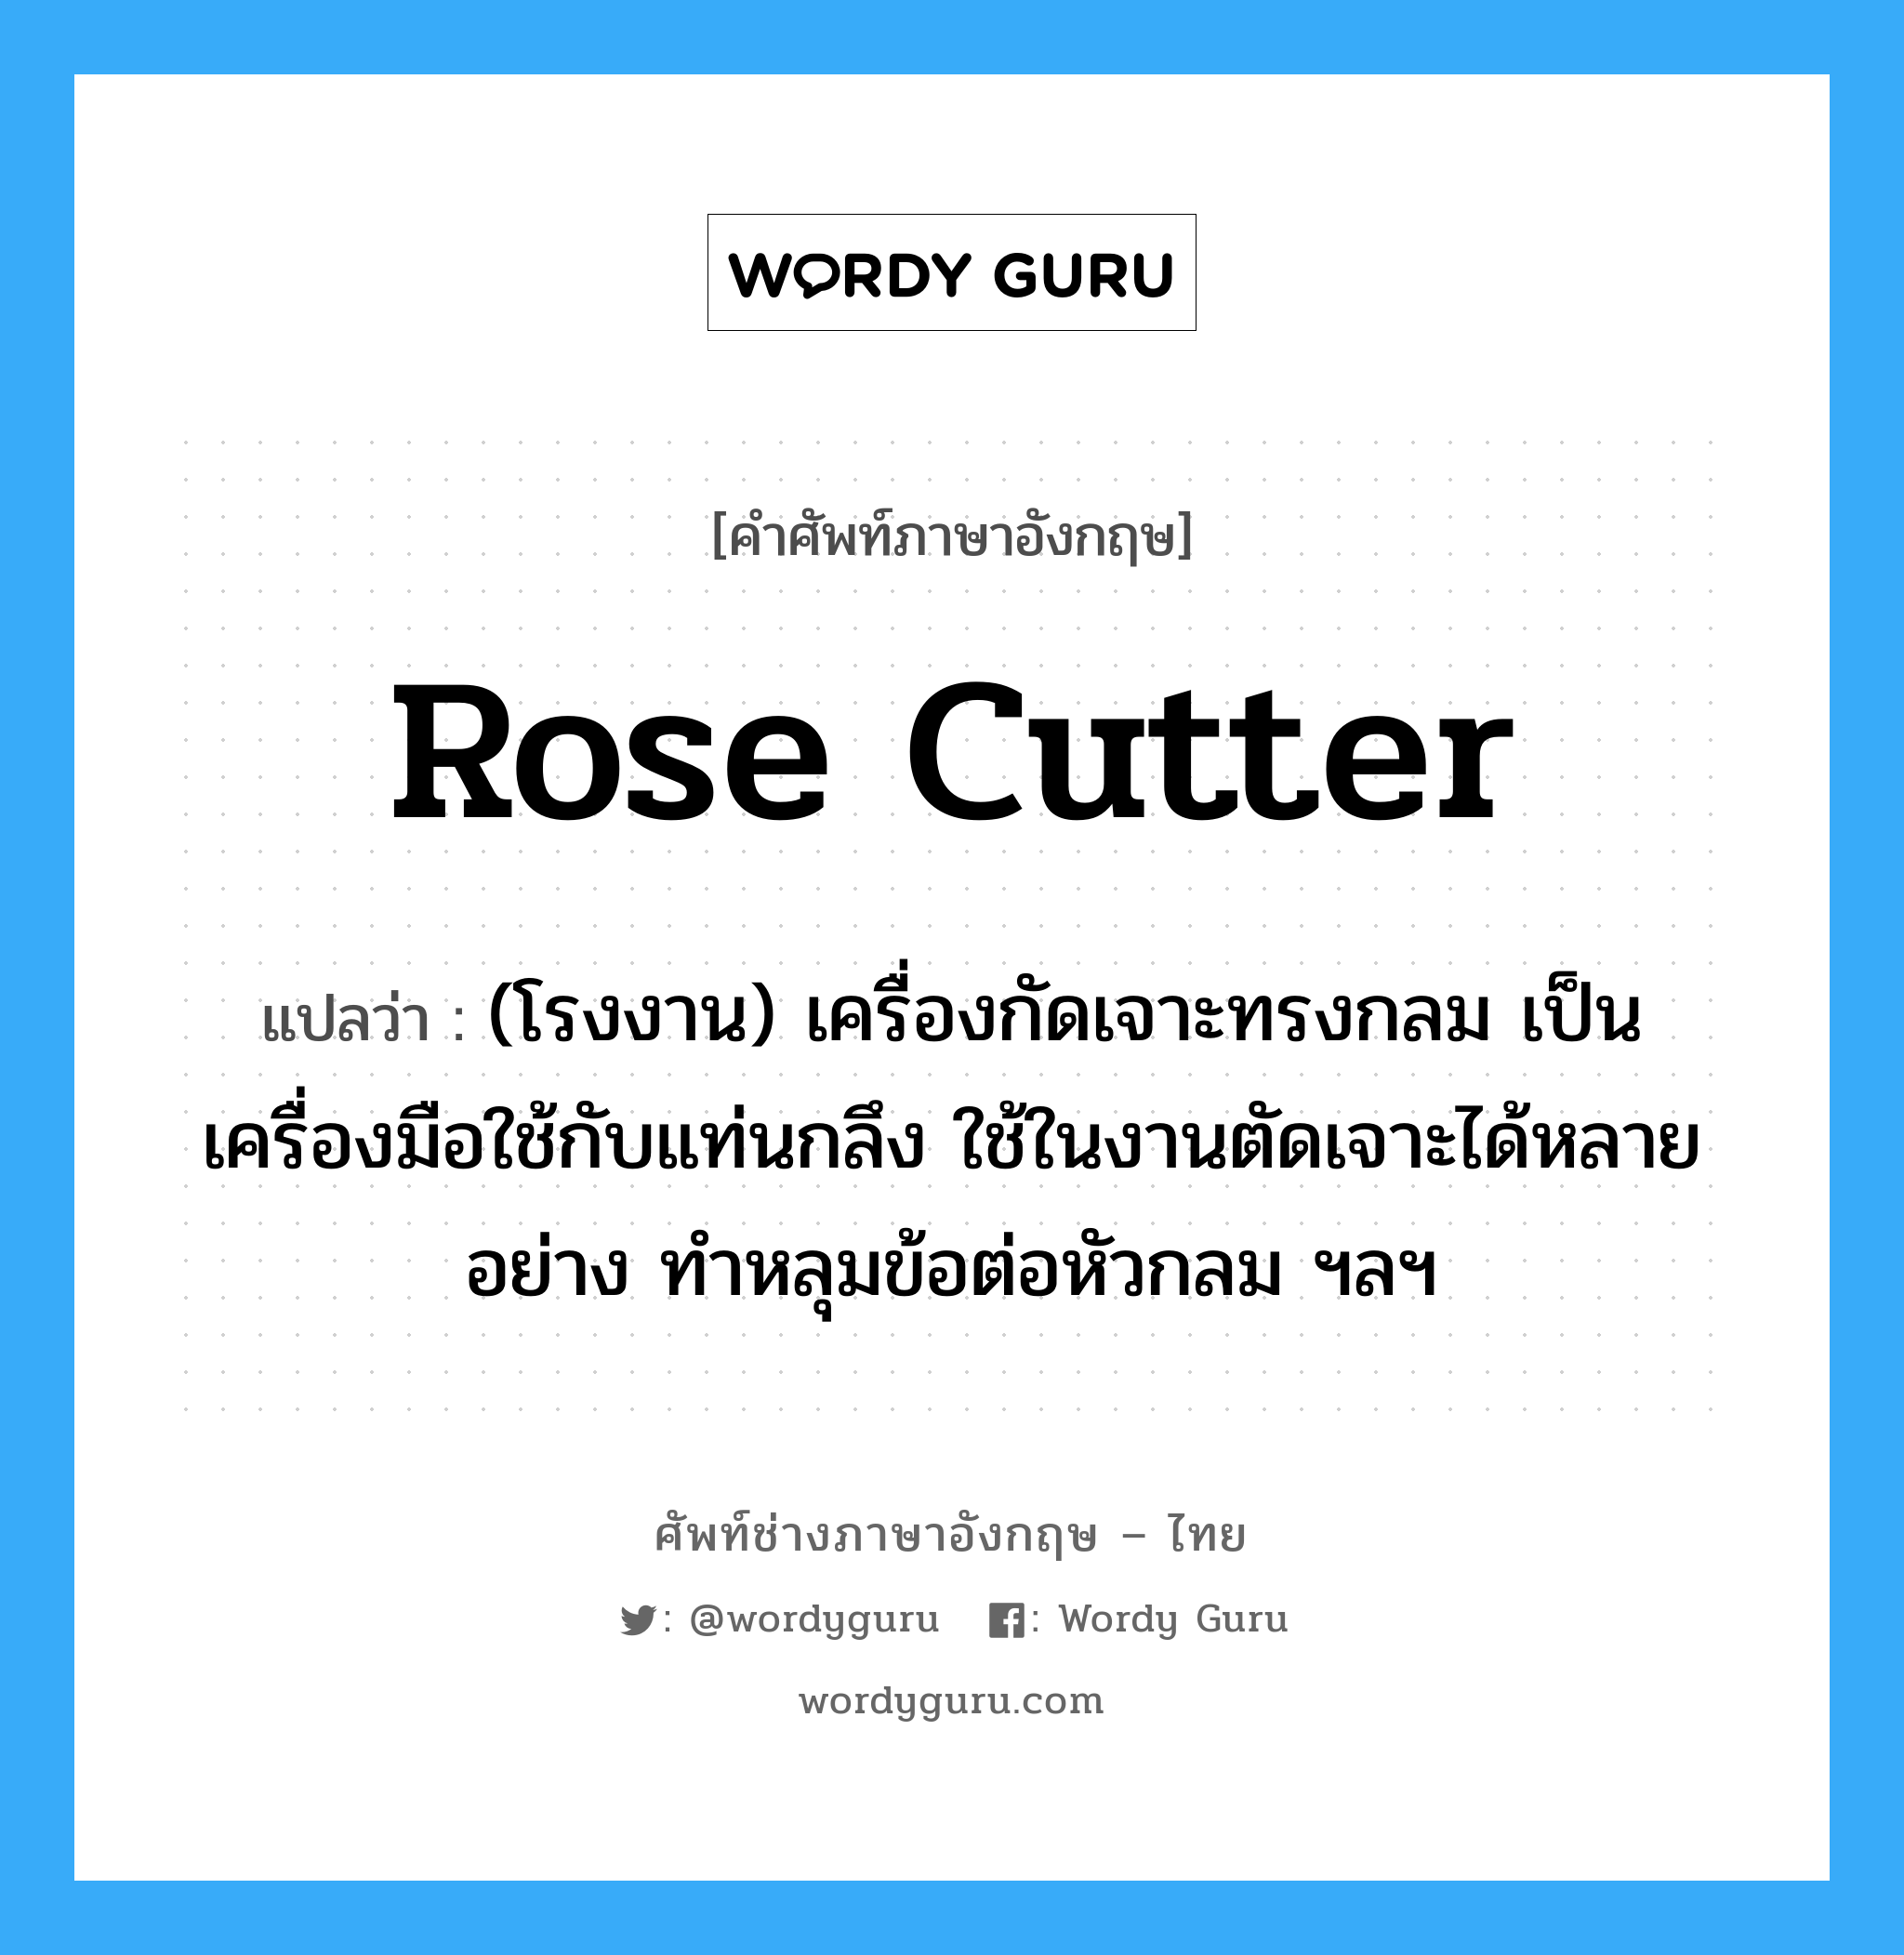 rose cutter แปลว่า?, คำศัพท์ช่างภาษาอังกฤษ - ไทย rose cutter คำศัพท์ภาษาอังกฤษ rose cutter แปลว่า (โรงงาน) เครื่องกัดเจาะทรงกลม เป็นเครื่องมือใช้กับแท่นกลึง ใช้ในงานตัดเจาะได้หลายอย่าง ทำหลุมข้อต่อหัวกลม ฯลฯ